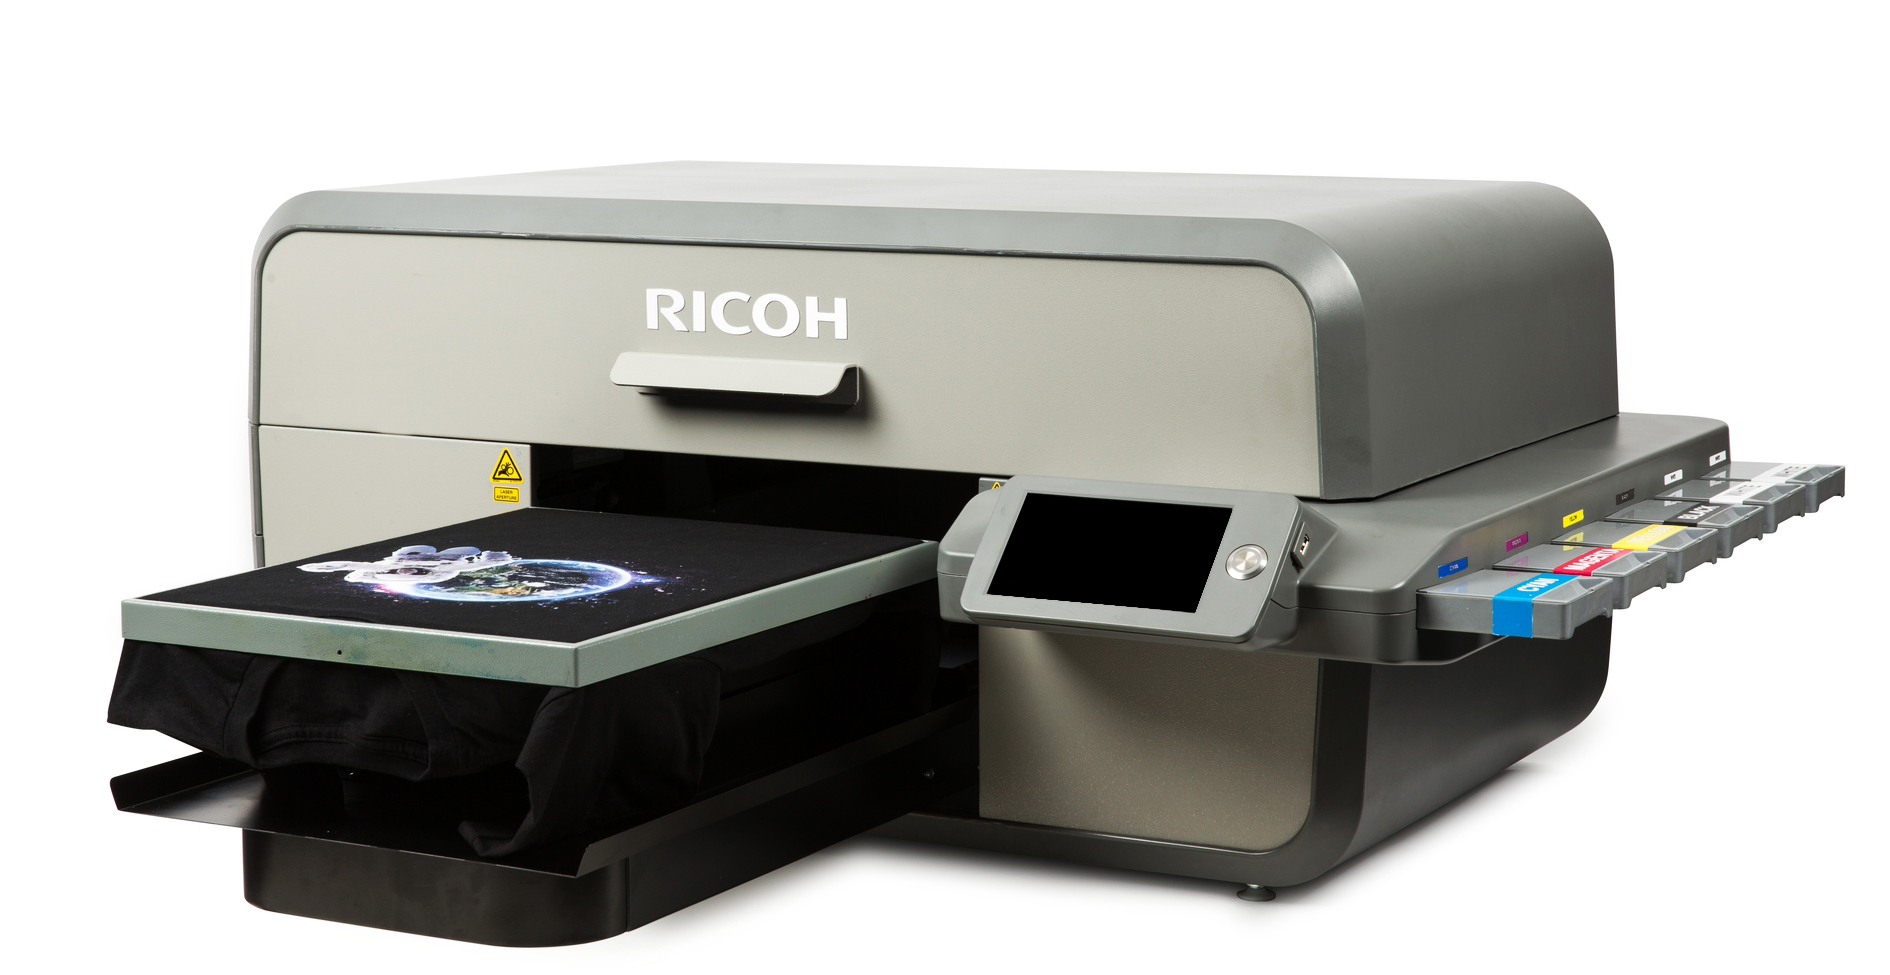 Ricoh lance deux nouvelles imprimantes pour impression directe sur textile